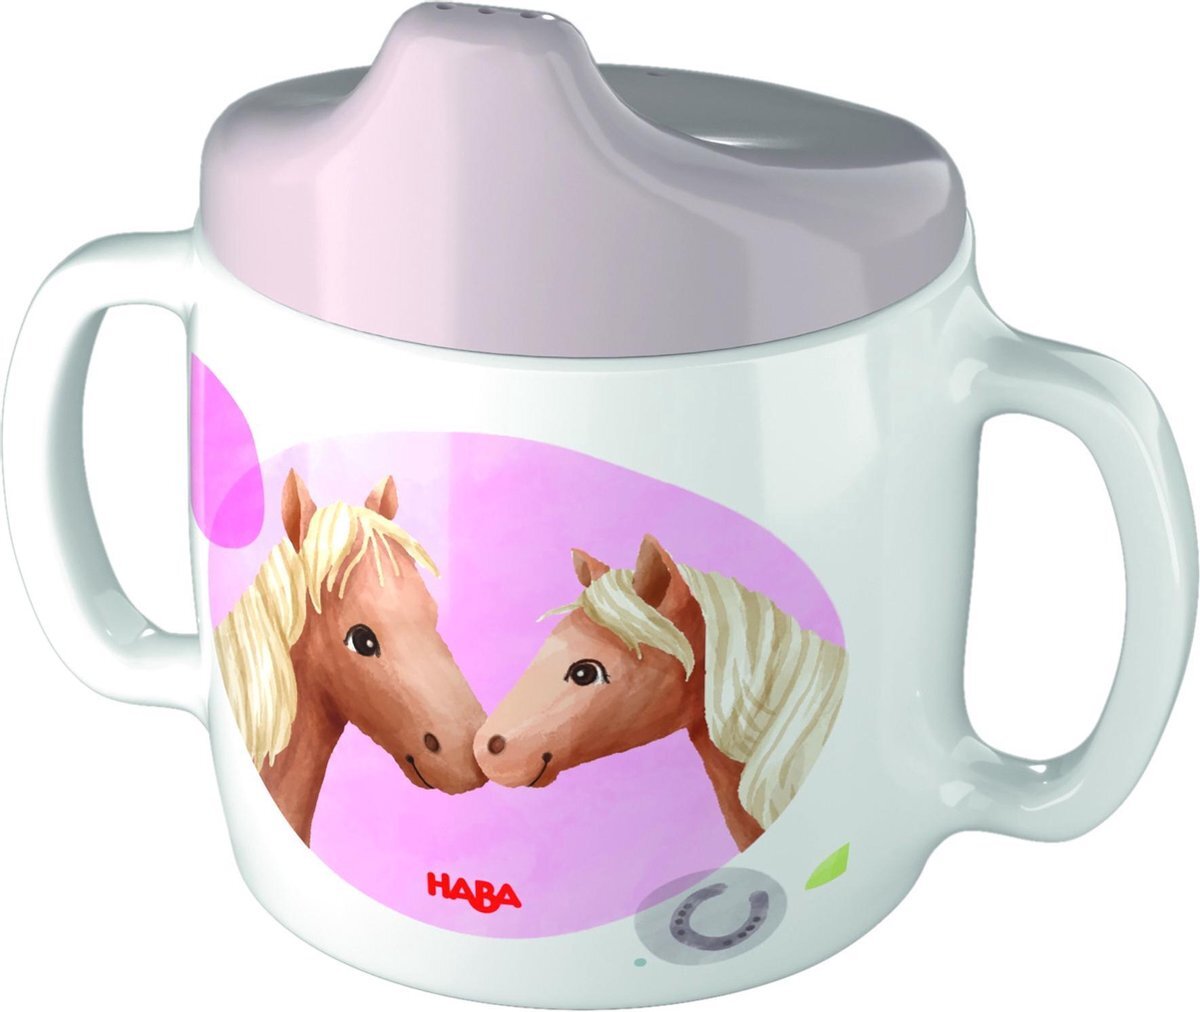 Haba Baby drinkbeker Paarden multi colour